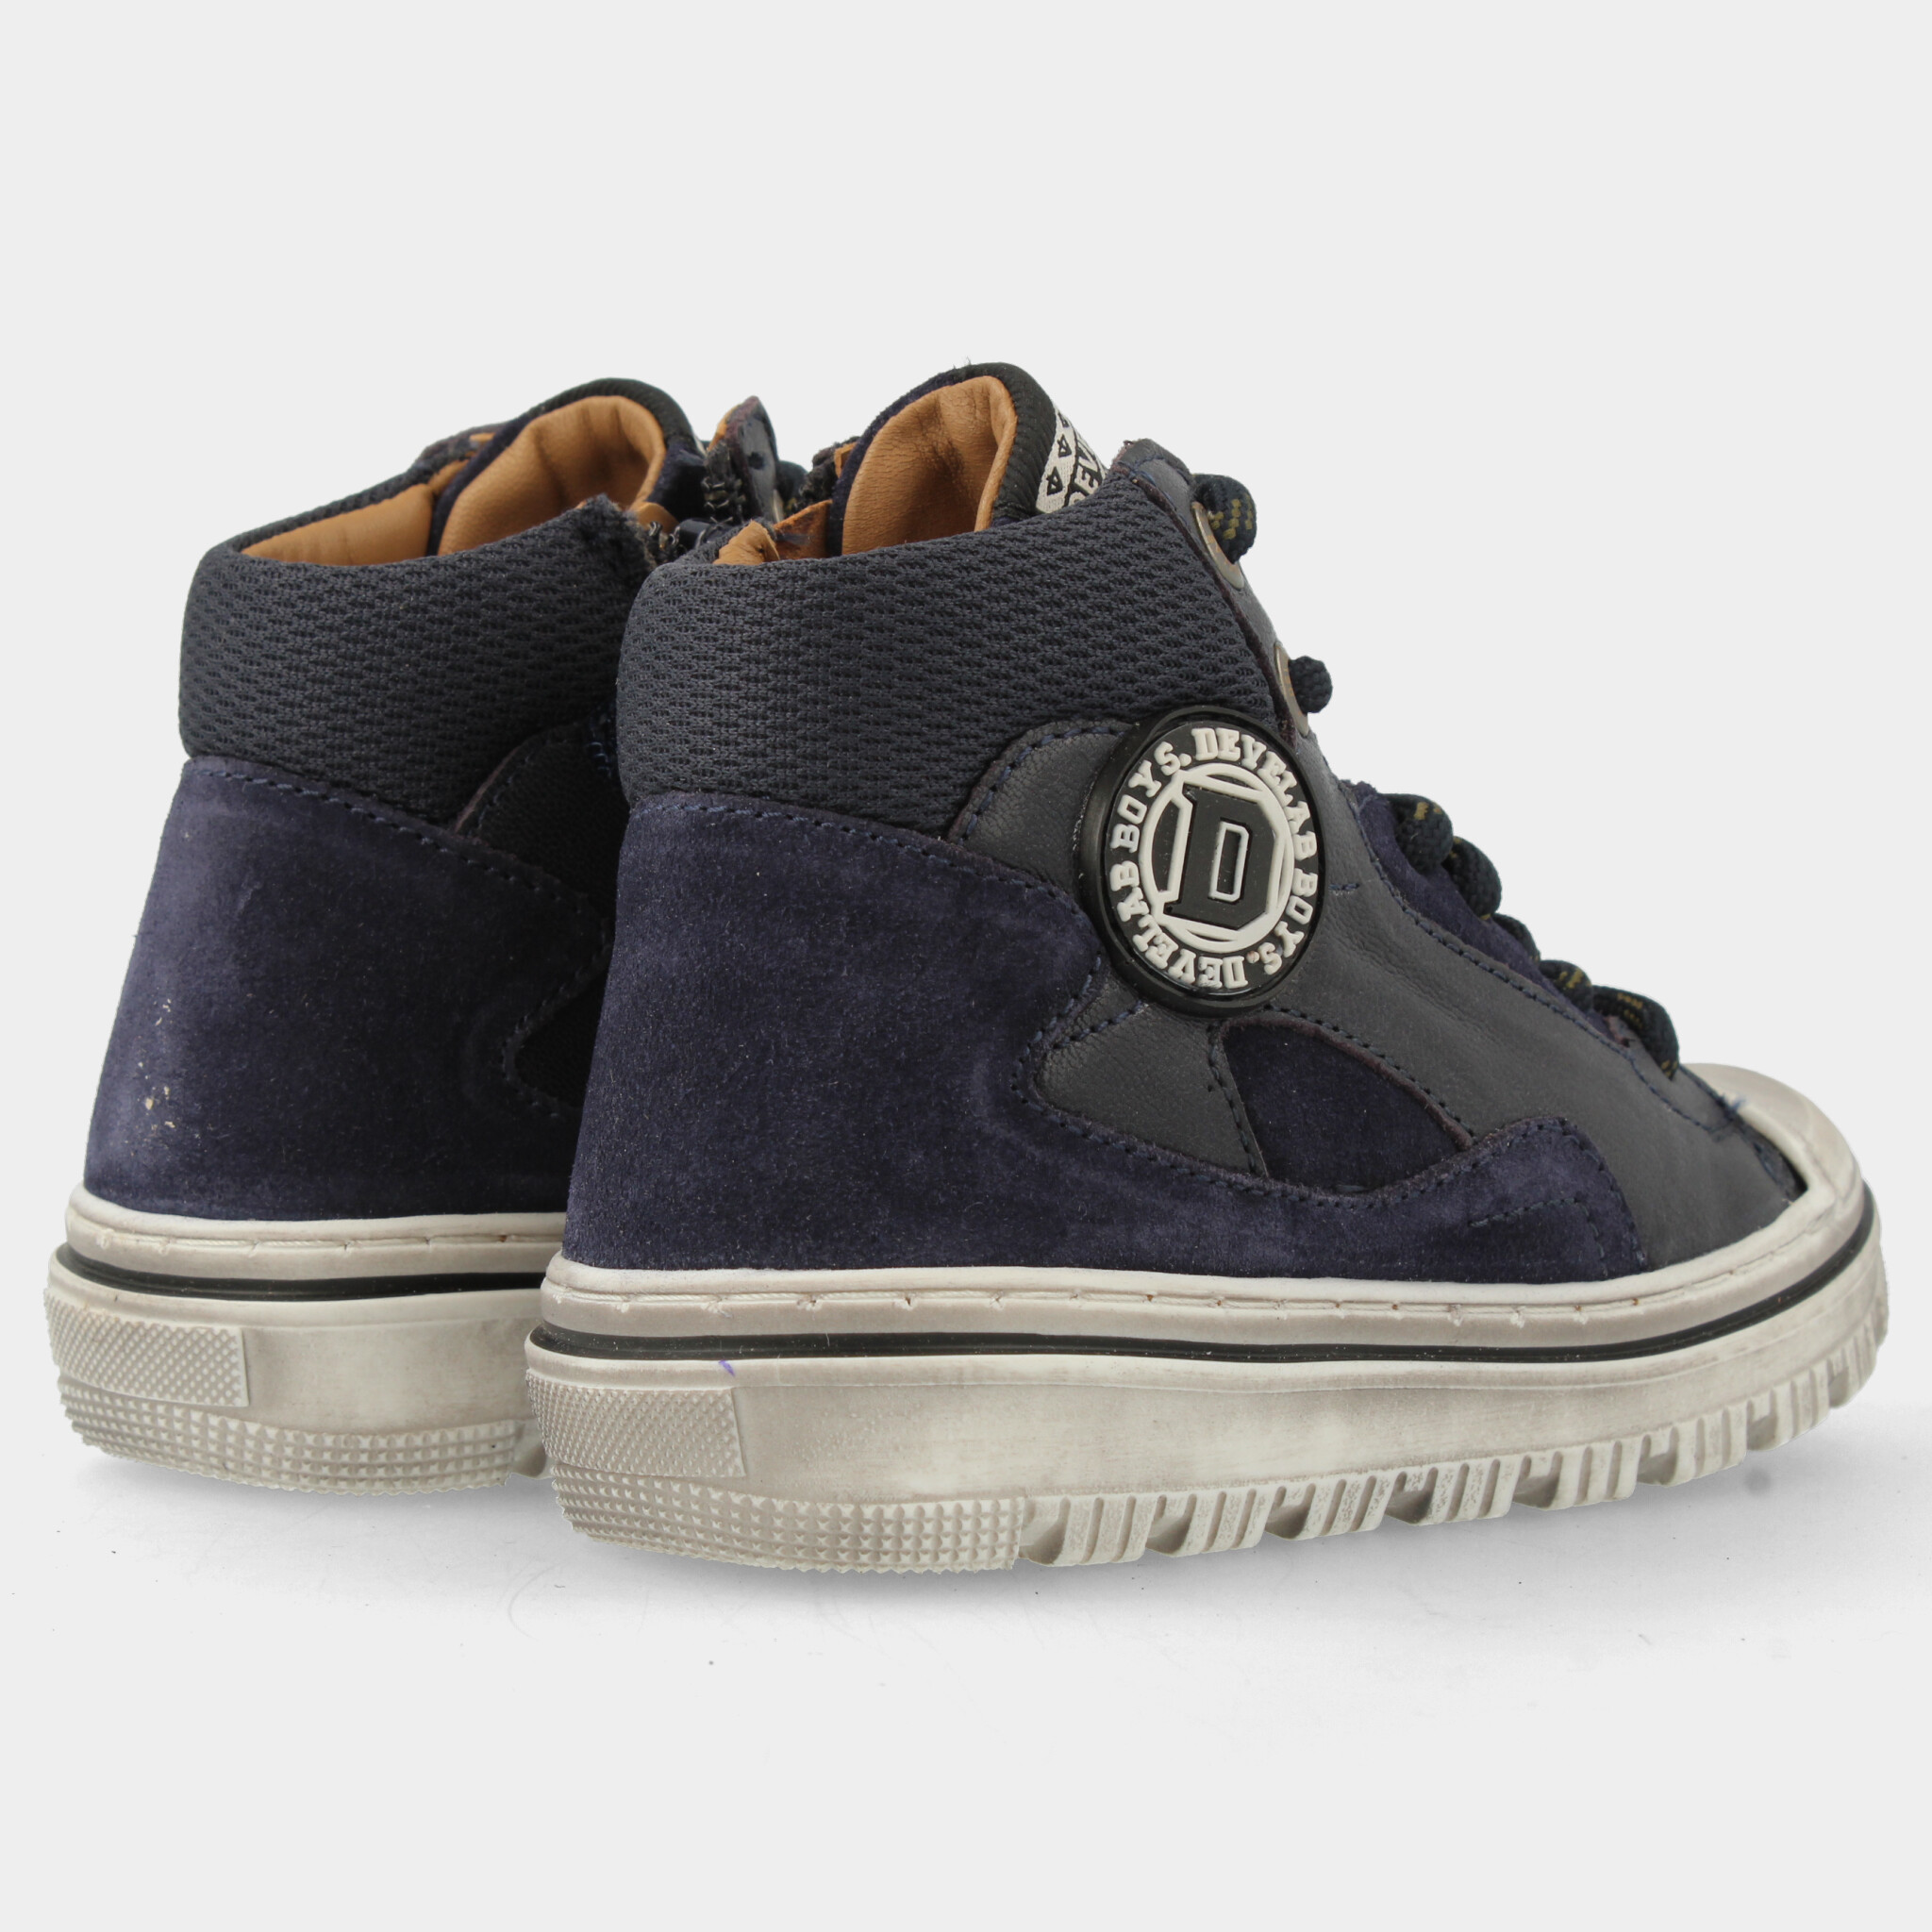 Blauwe sneakers | 44301